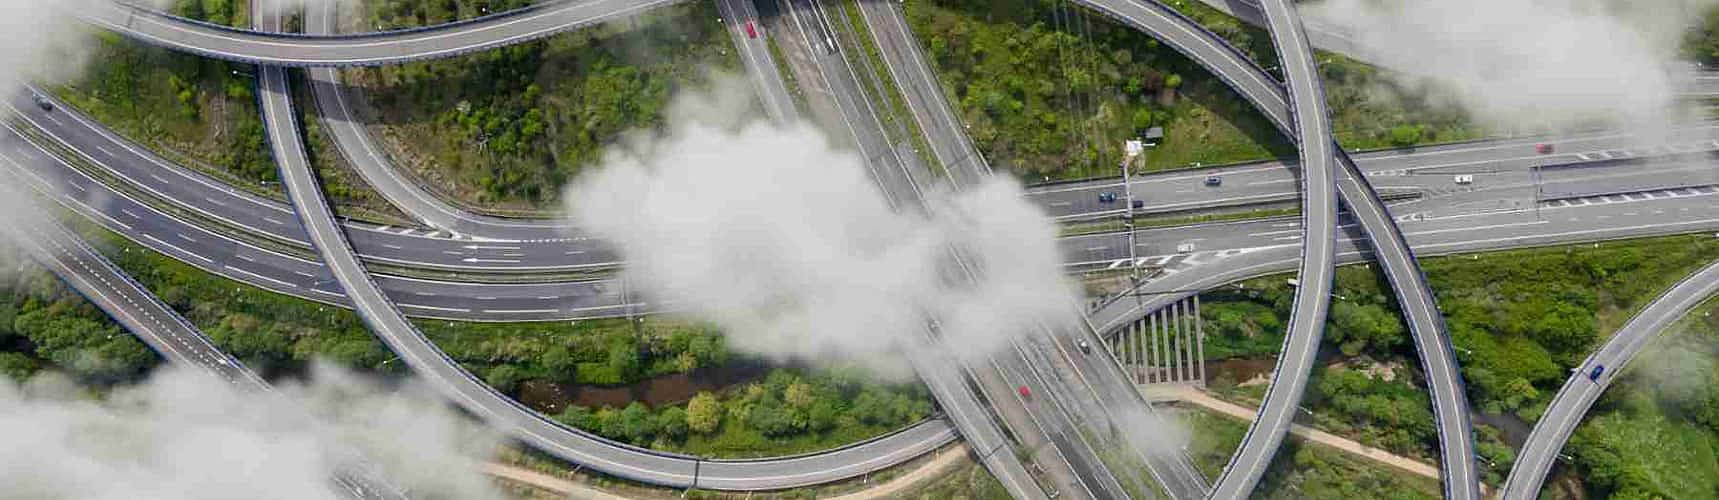 Logistica verde: vista aérea de rodovias interligadas entrepostas de áreas verdes